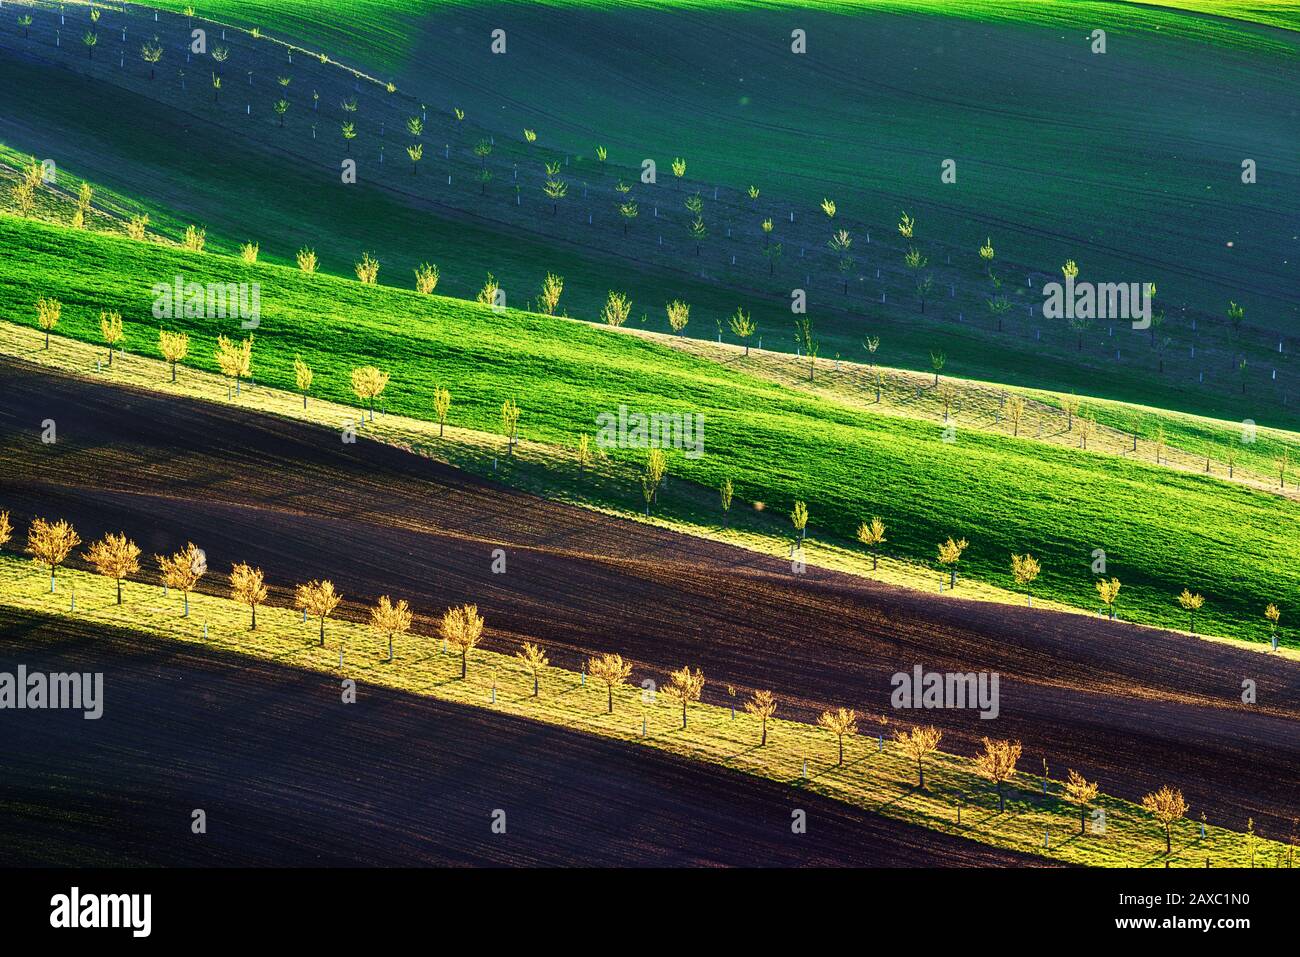 Vagues vertes, brunes et jaunes des champs agricoles de la Moravie du Sud, République tchèque. Paysage rural de printemps avec des collines rayées colorées avec des arbres. Peut être utilisé comme fond de nature ou texture Banque D'Images